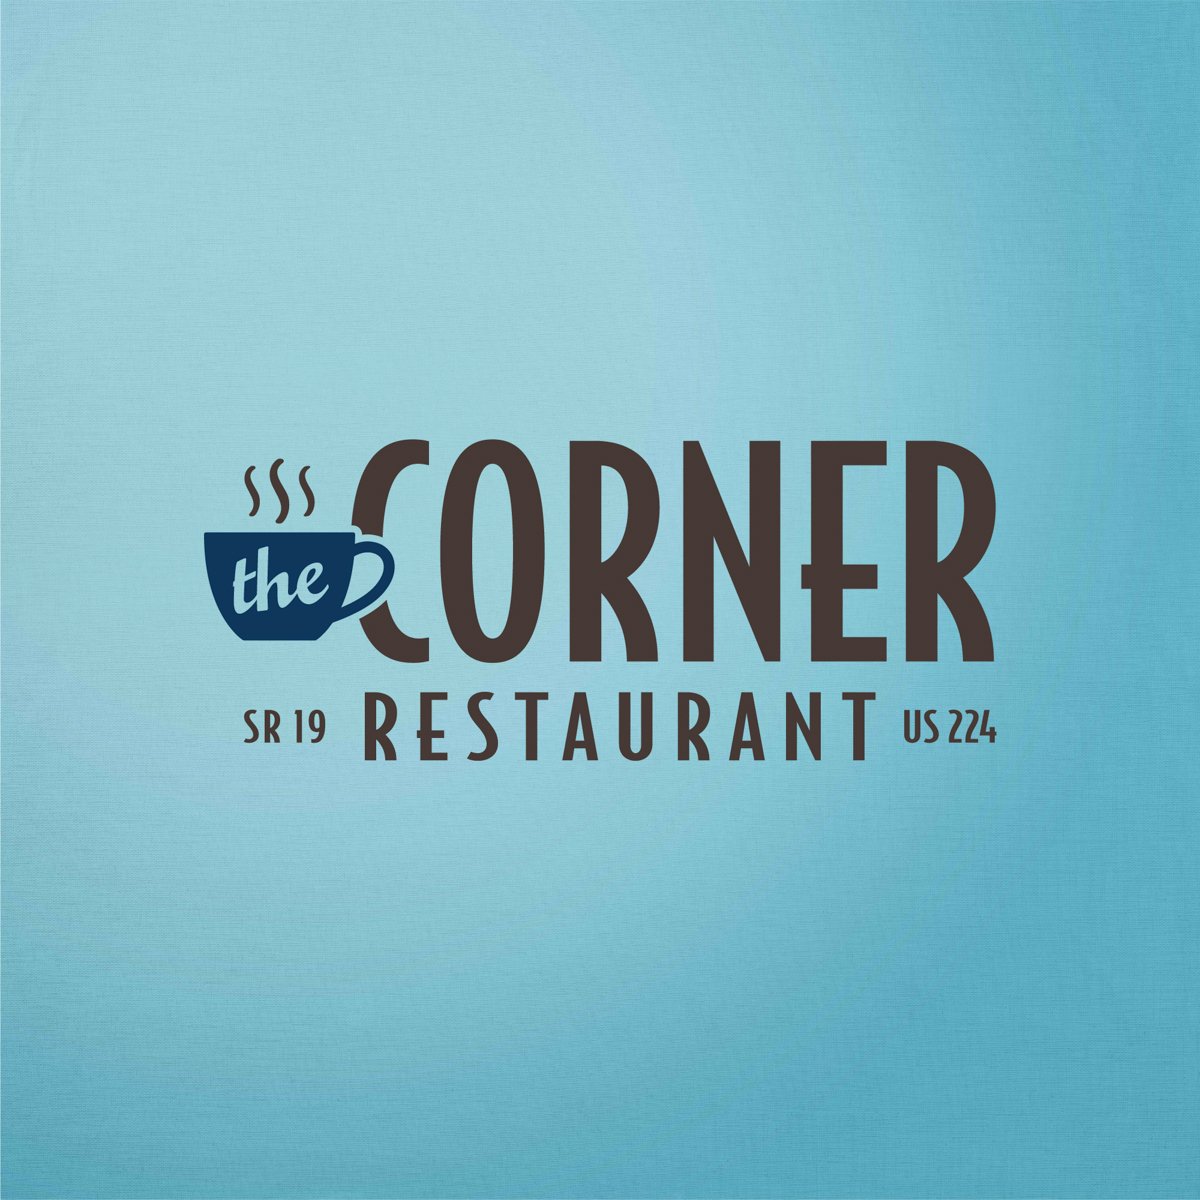 86_corner-restaurant_logo.jpg